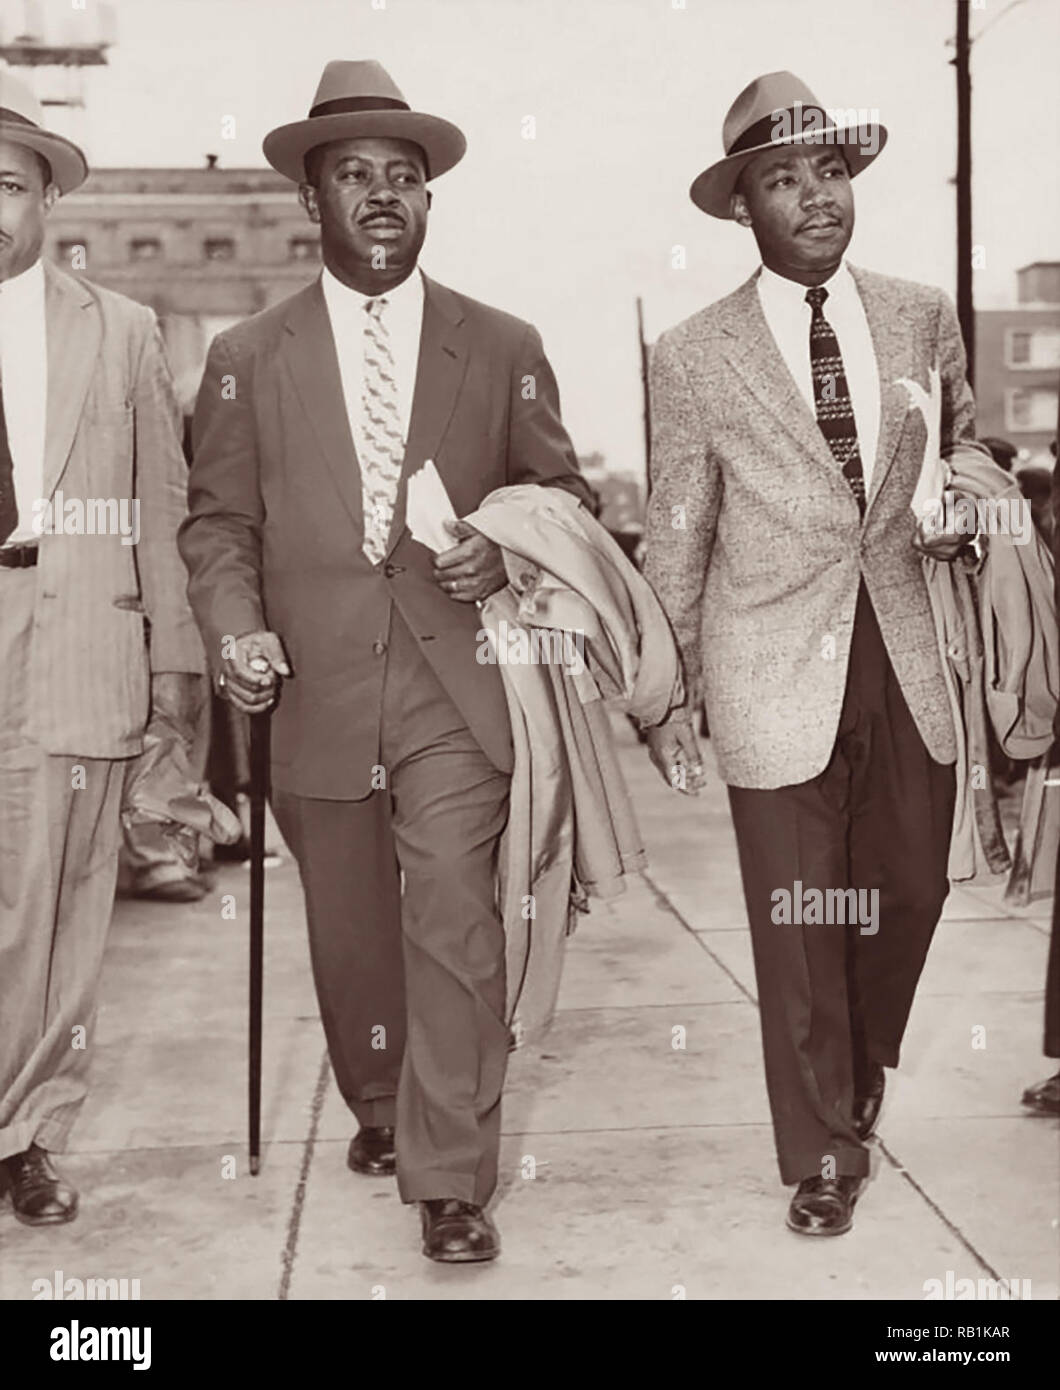 David Ralph Abernathy, senior et de Martin Luther King, Jr., laissant le Palais de justice de comté de Montgomery, Alabama, 1956. (USA) Banque D'Images